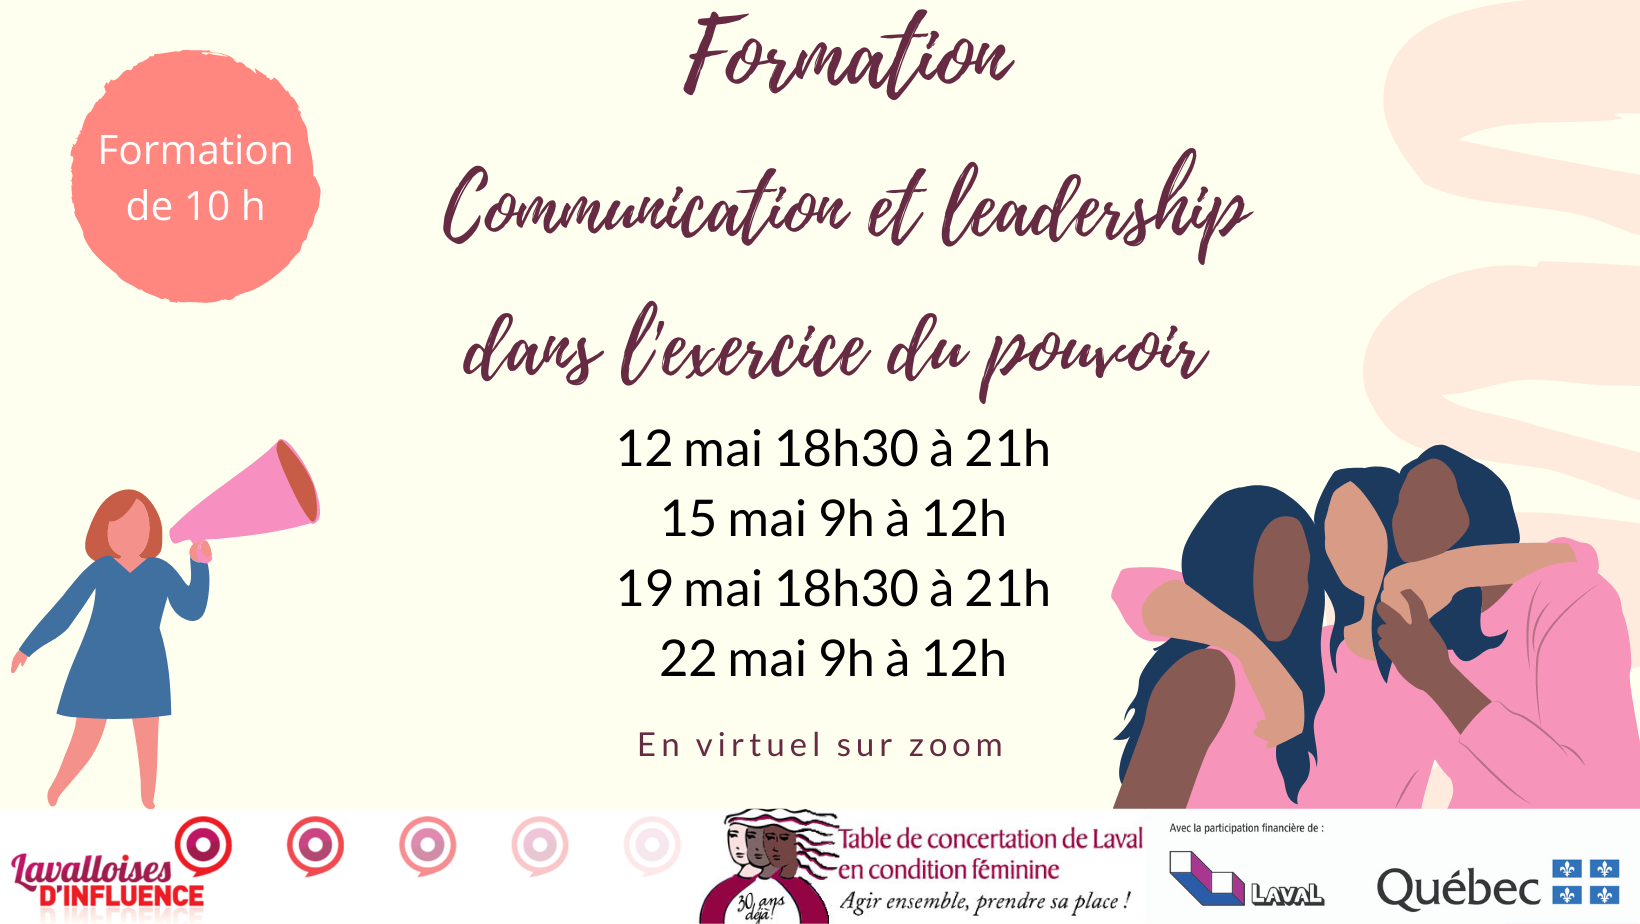 Formation Communication et leadership